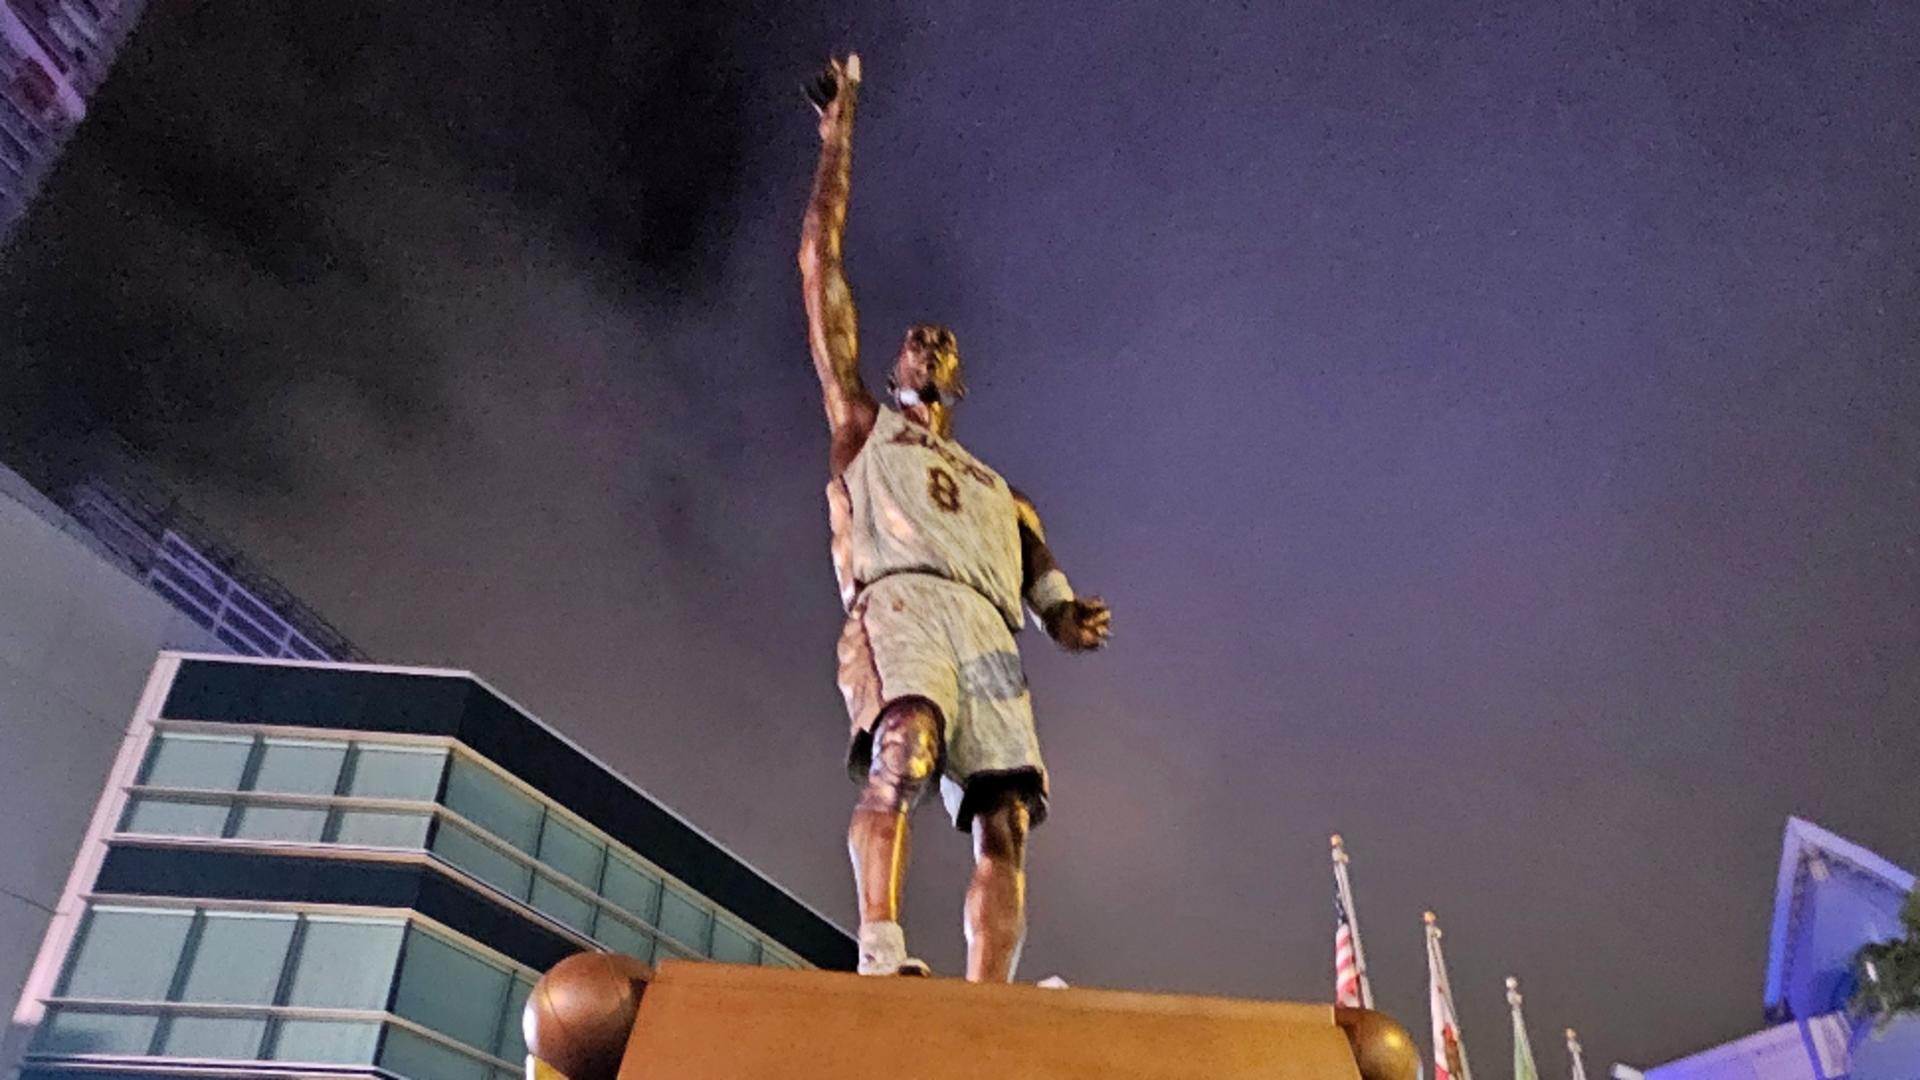 Greșeli de ortografie pe statuia lui Kobe Bryant. Au scris incorect până și cuvinte banale